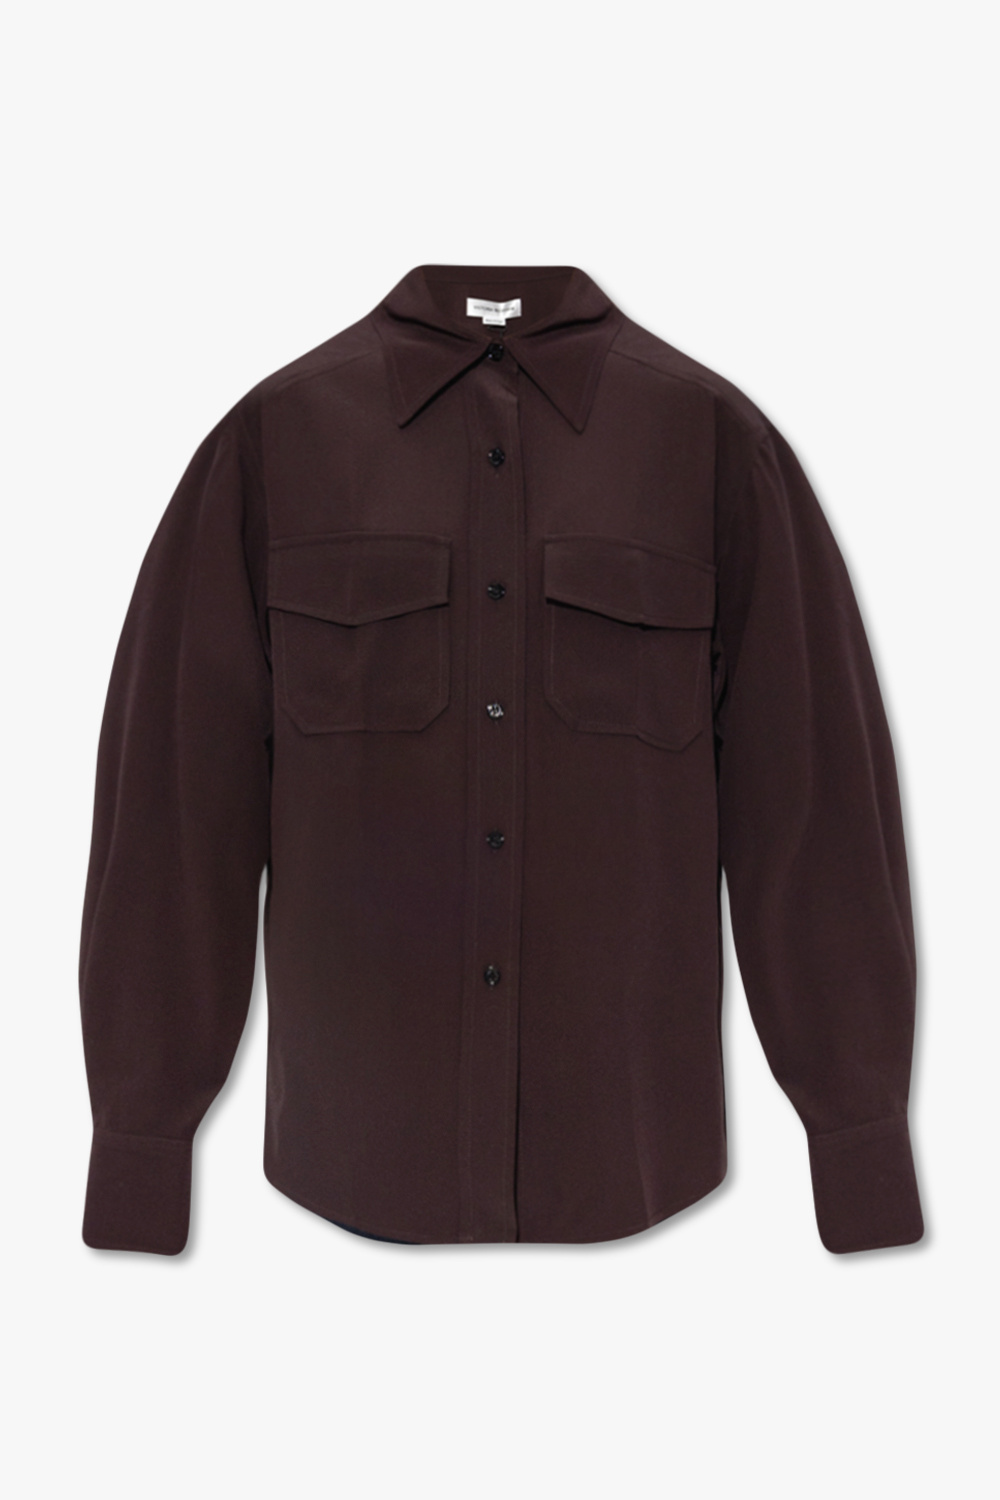 Victoria Beckham Silk camp-collar shirt with pockets